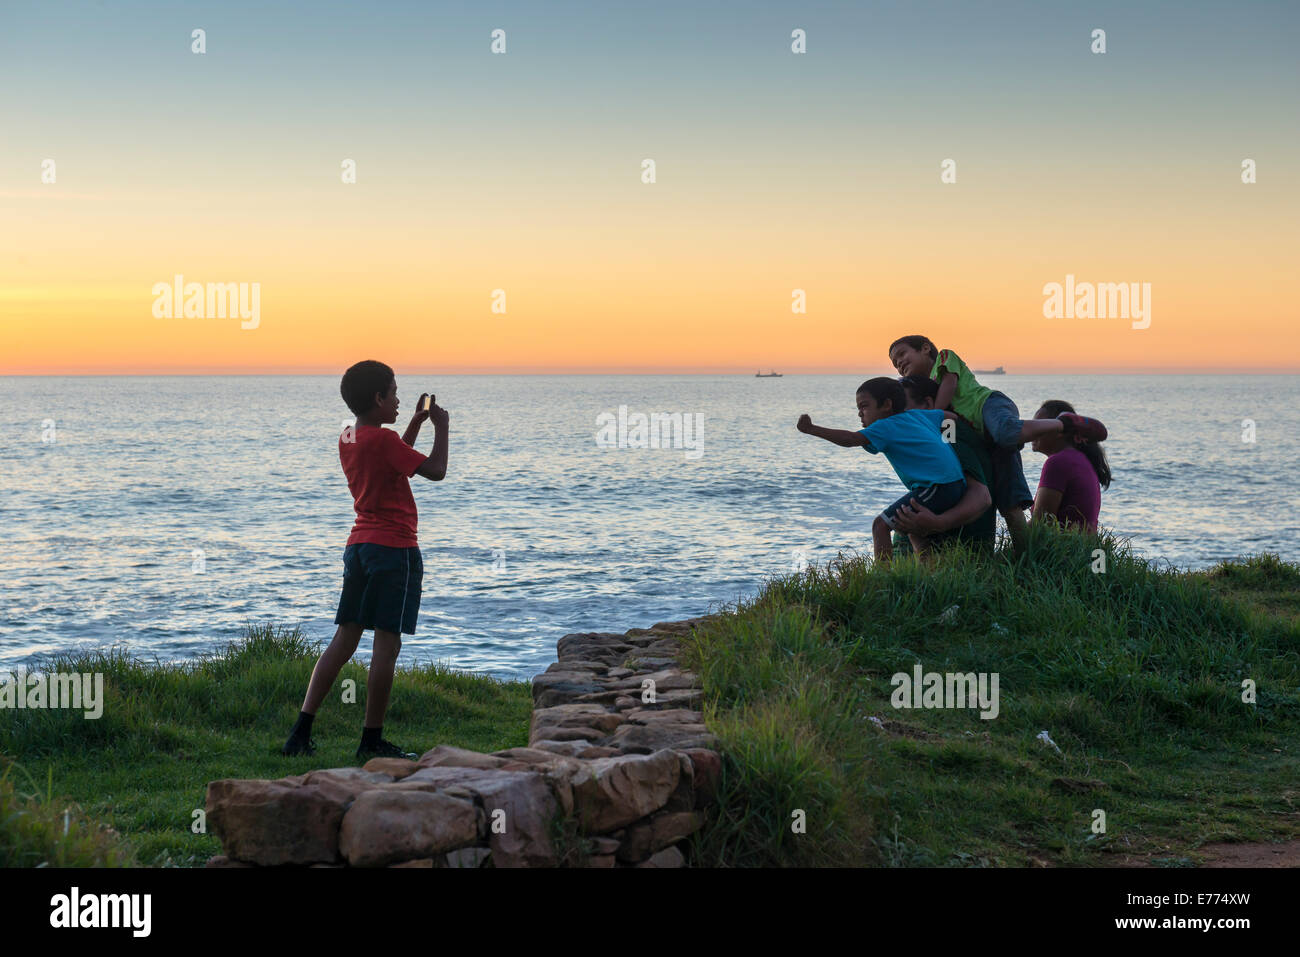 Ragazzo prende una foto dei suoi amici al tramonto sulla costa a sud di Città del Capo, Sud Africa Foto Stock